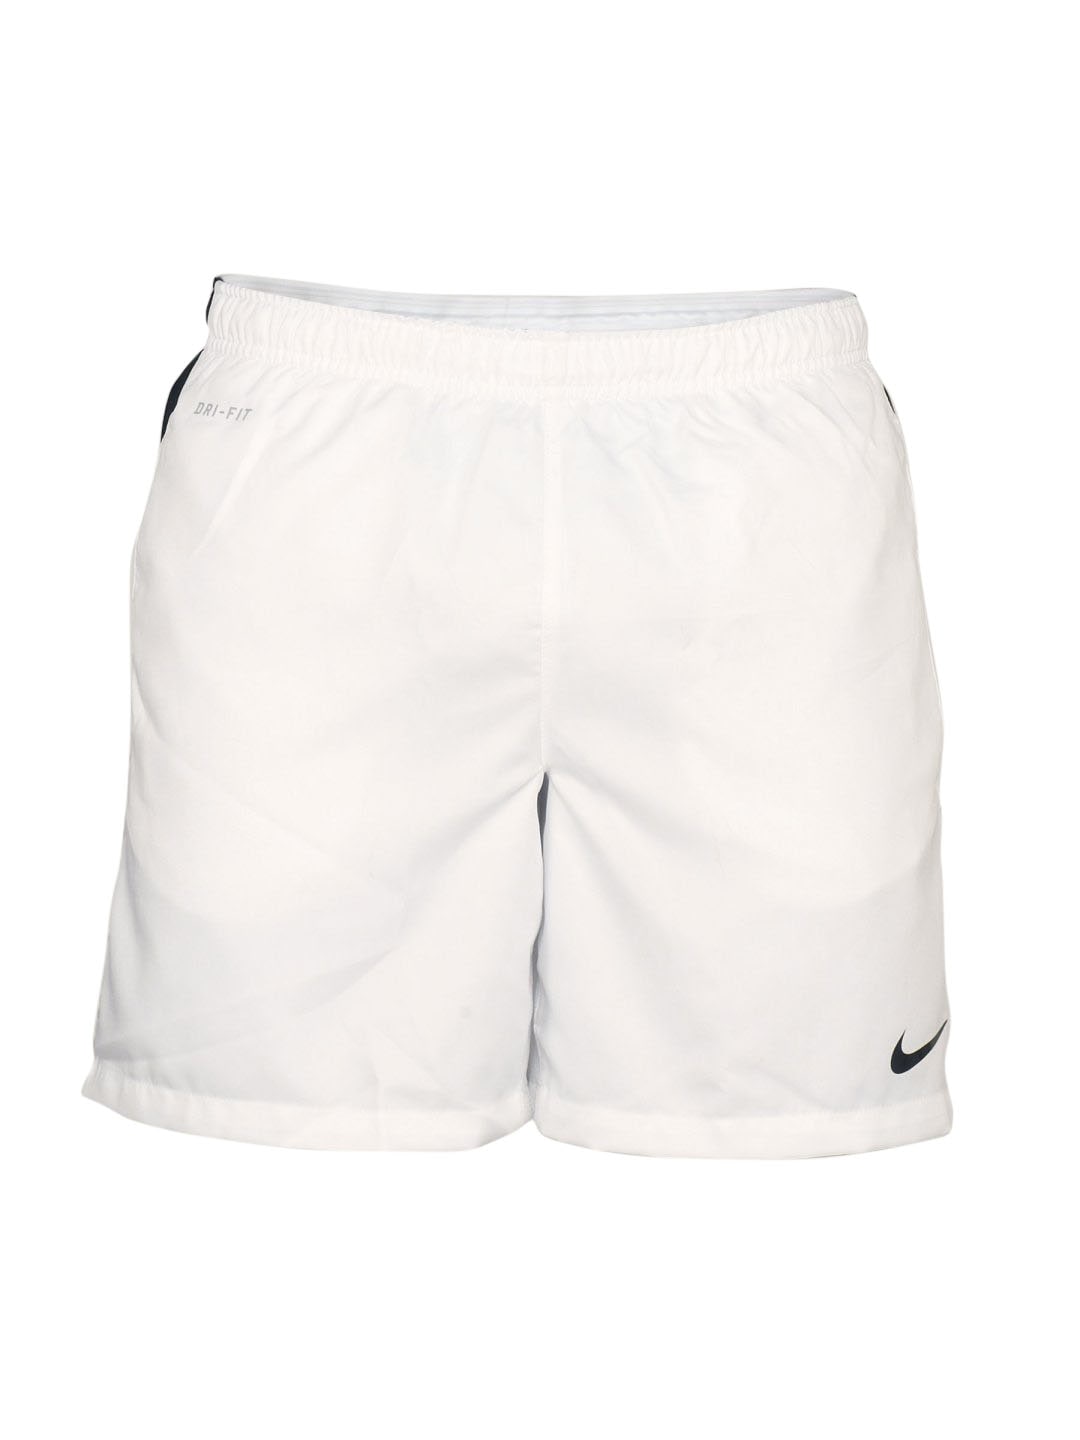 Nike Men's Woven Dri Fit White Short